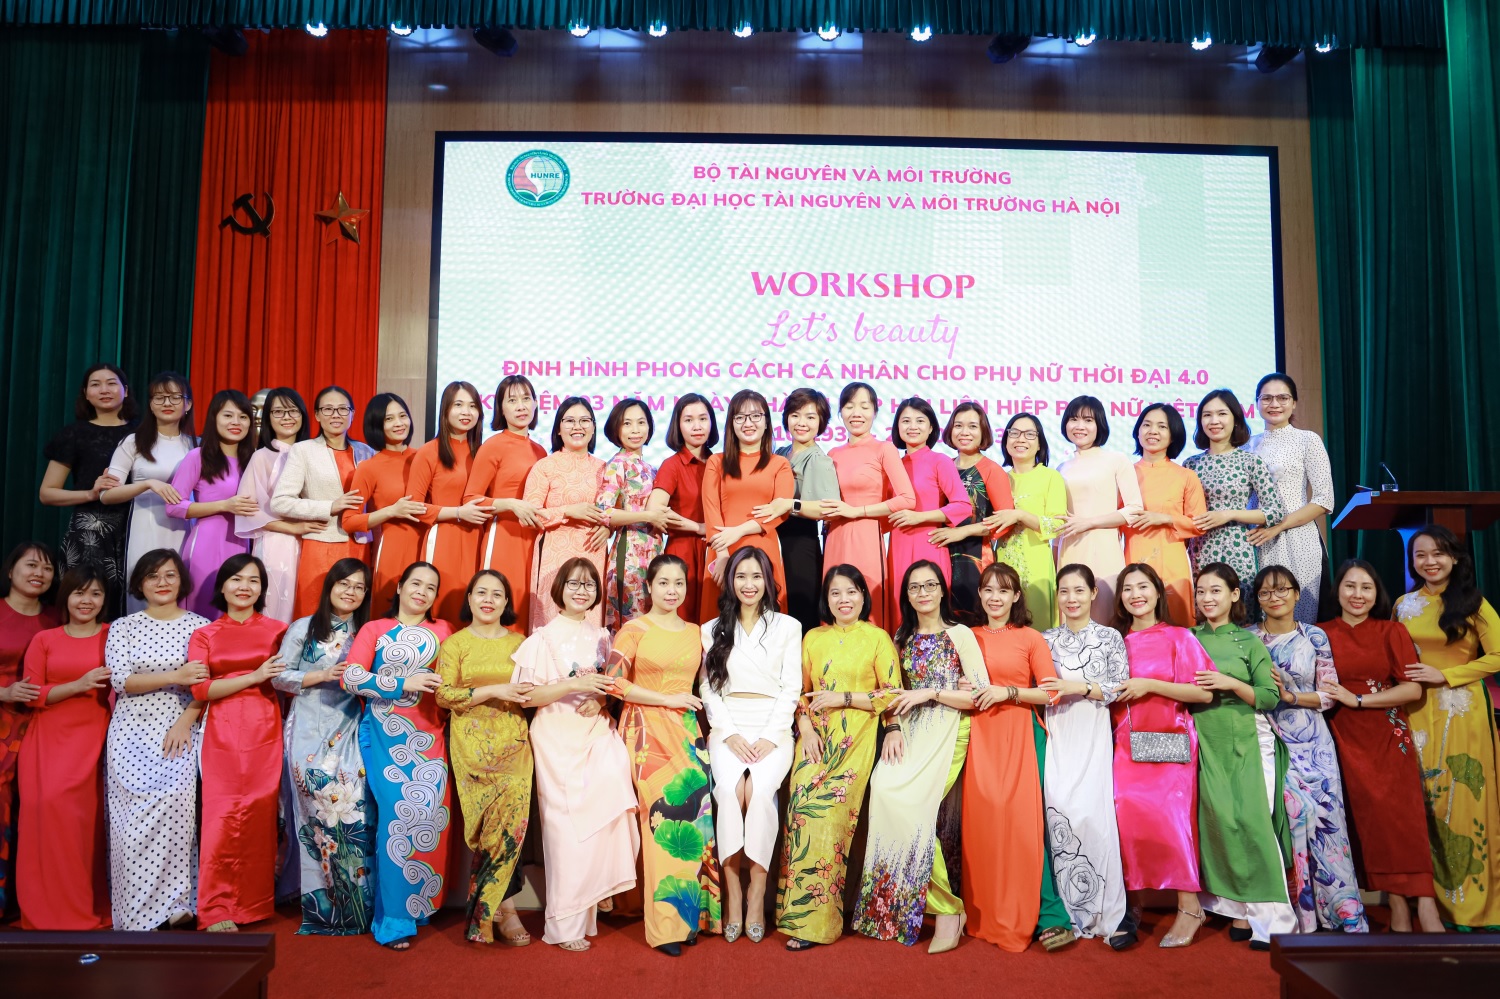 Nữ cán bộ, viên chức, người lao động Trường Đại học Tài nguyên và Môi trường Hà Nội chụp ảnh lưu niệm tại chương trình.